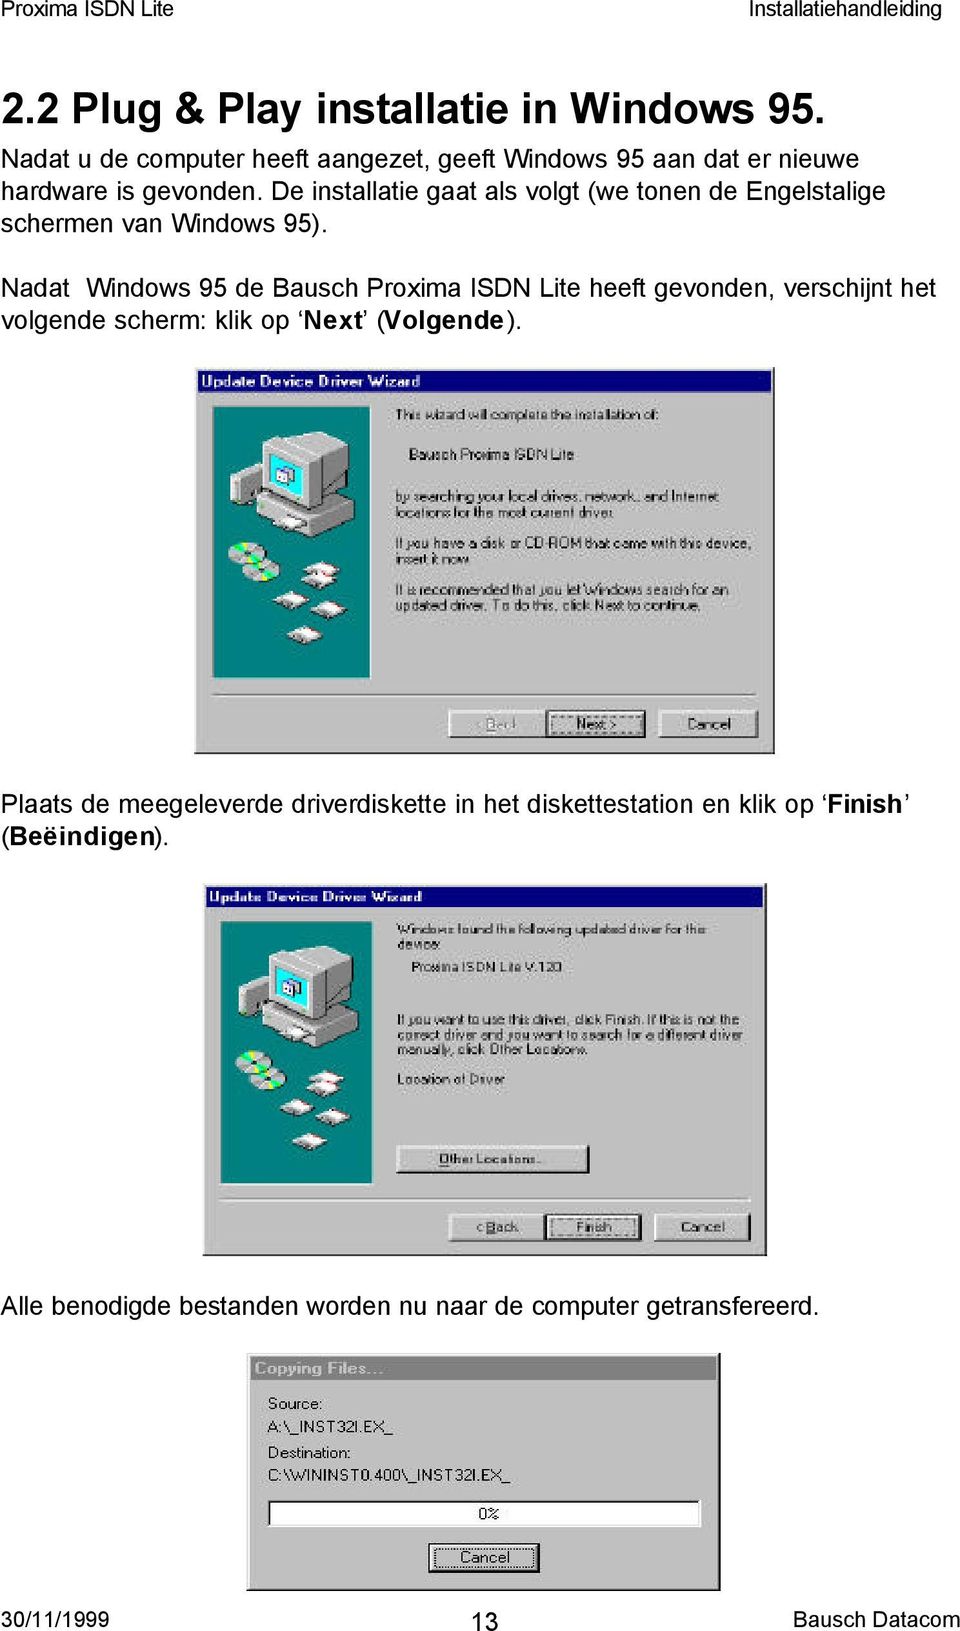 De installatie gaat als volgt (we tonen de Engelstalige schermen van Windows 95).